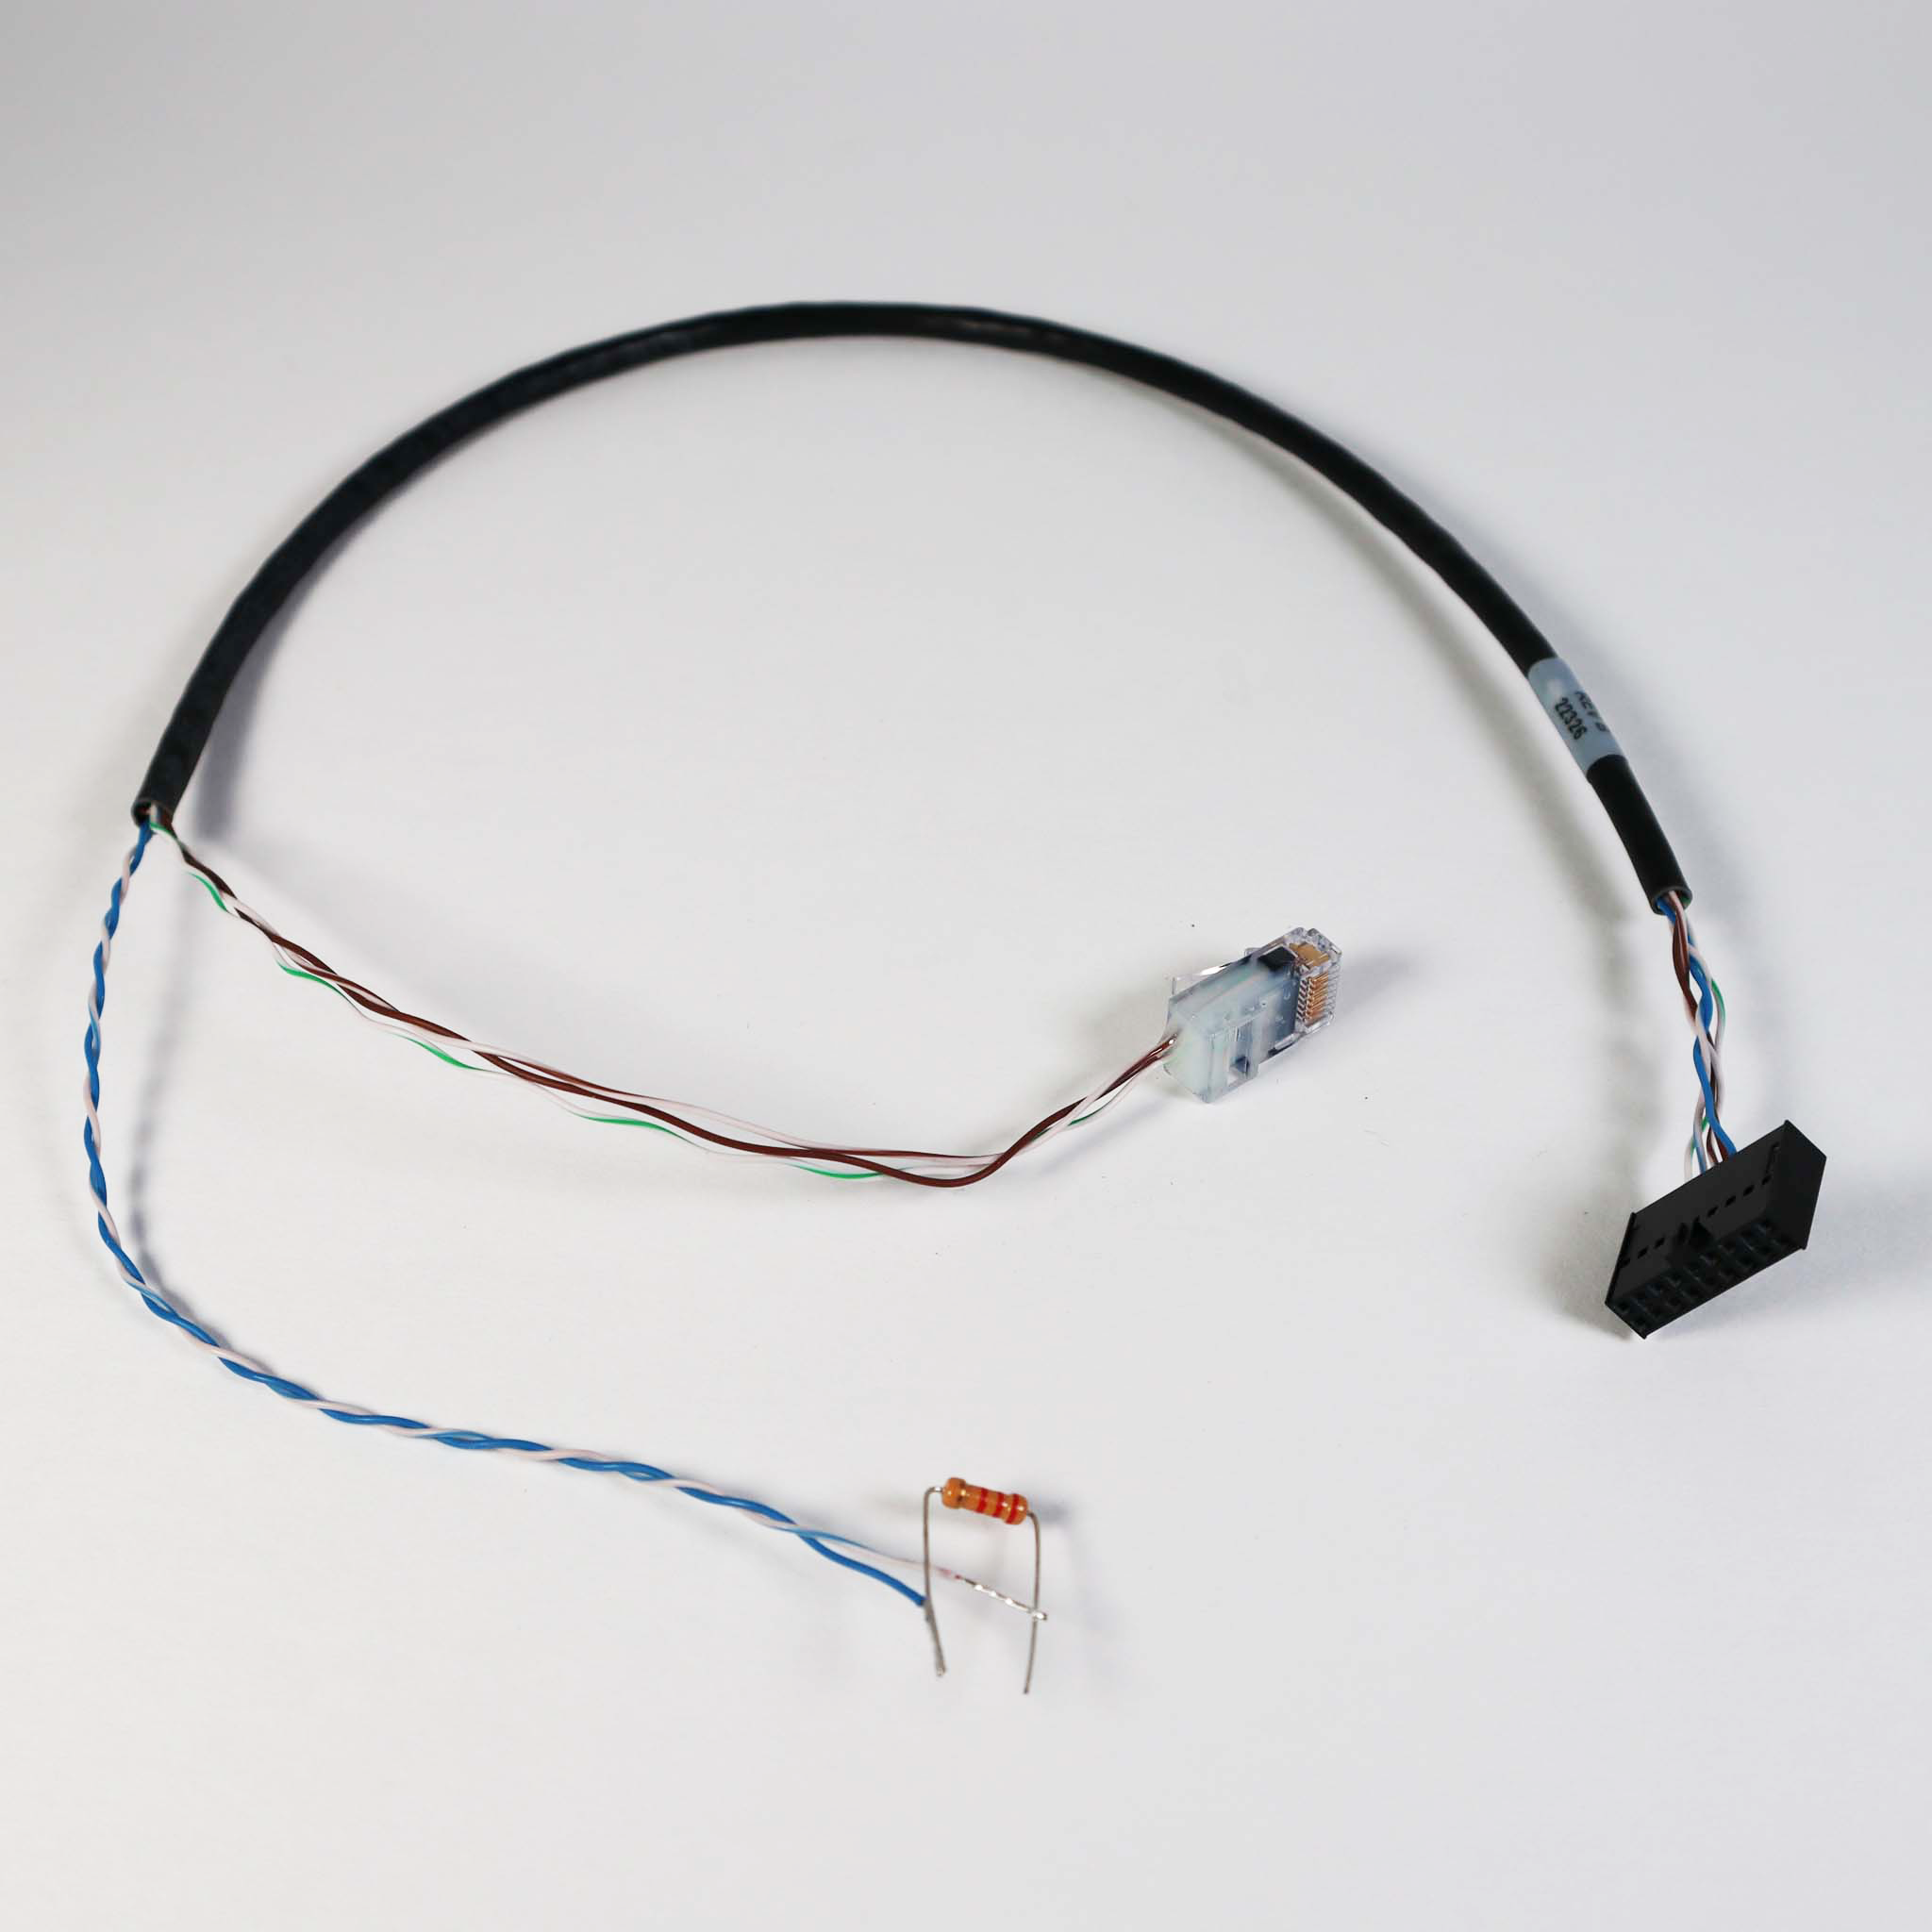 MX002413 Cable, Modbus, 22 inch